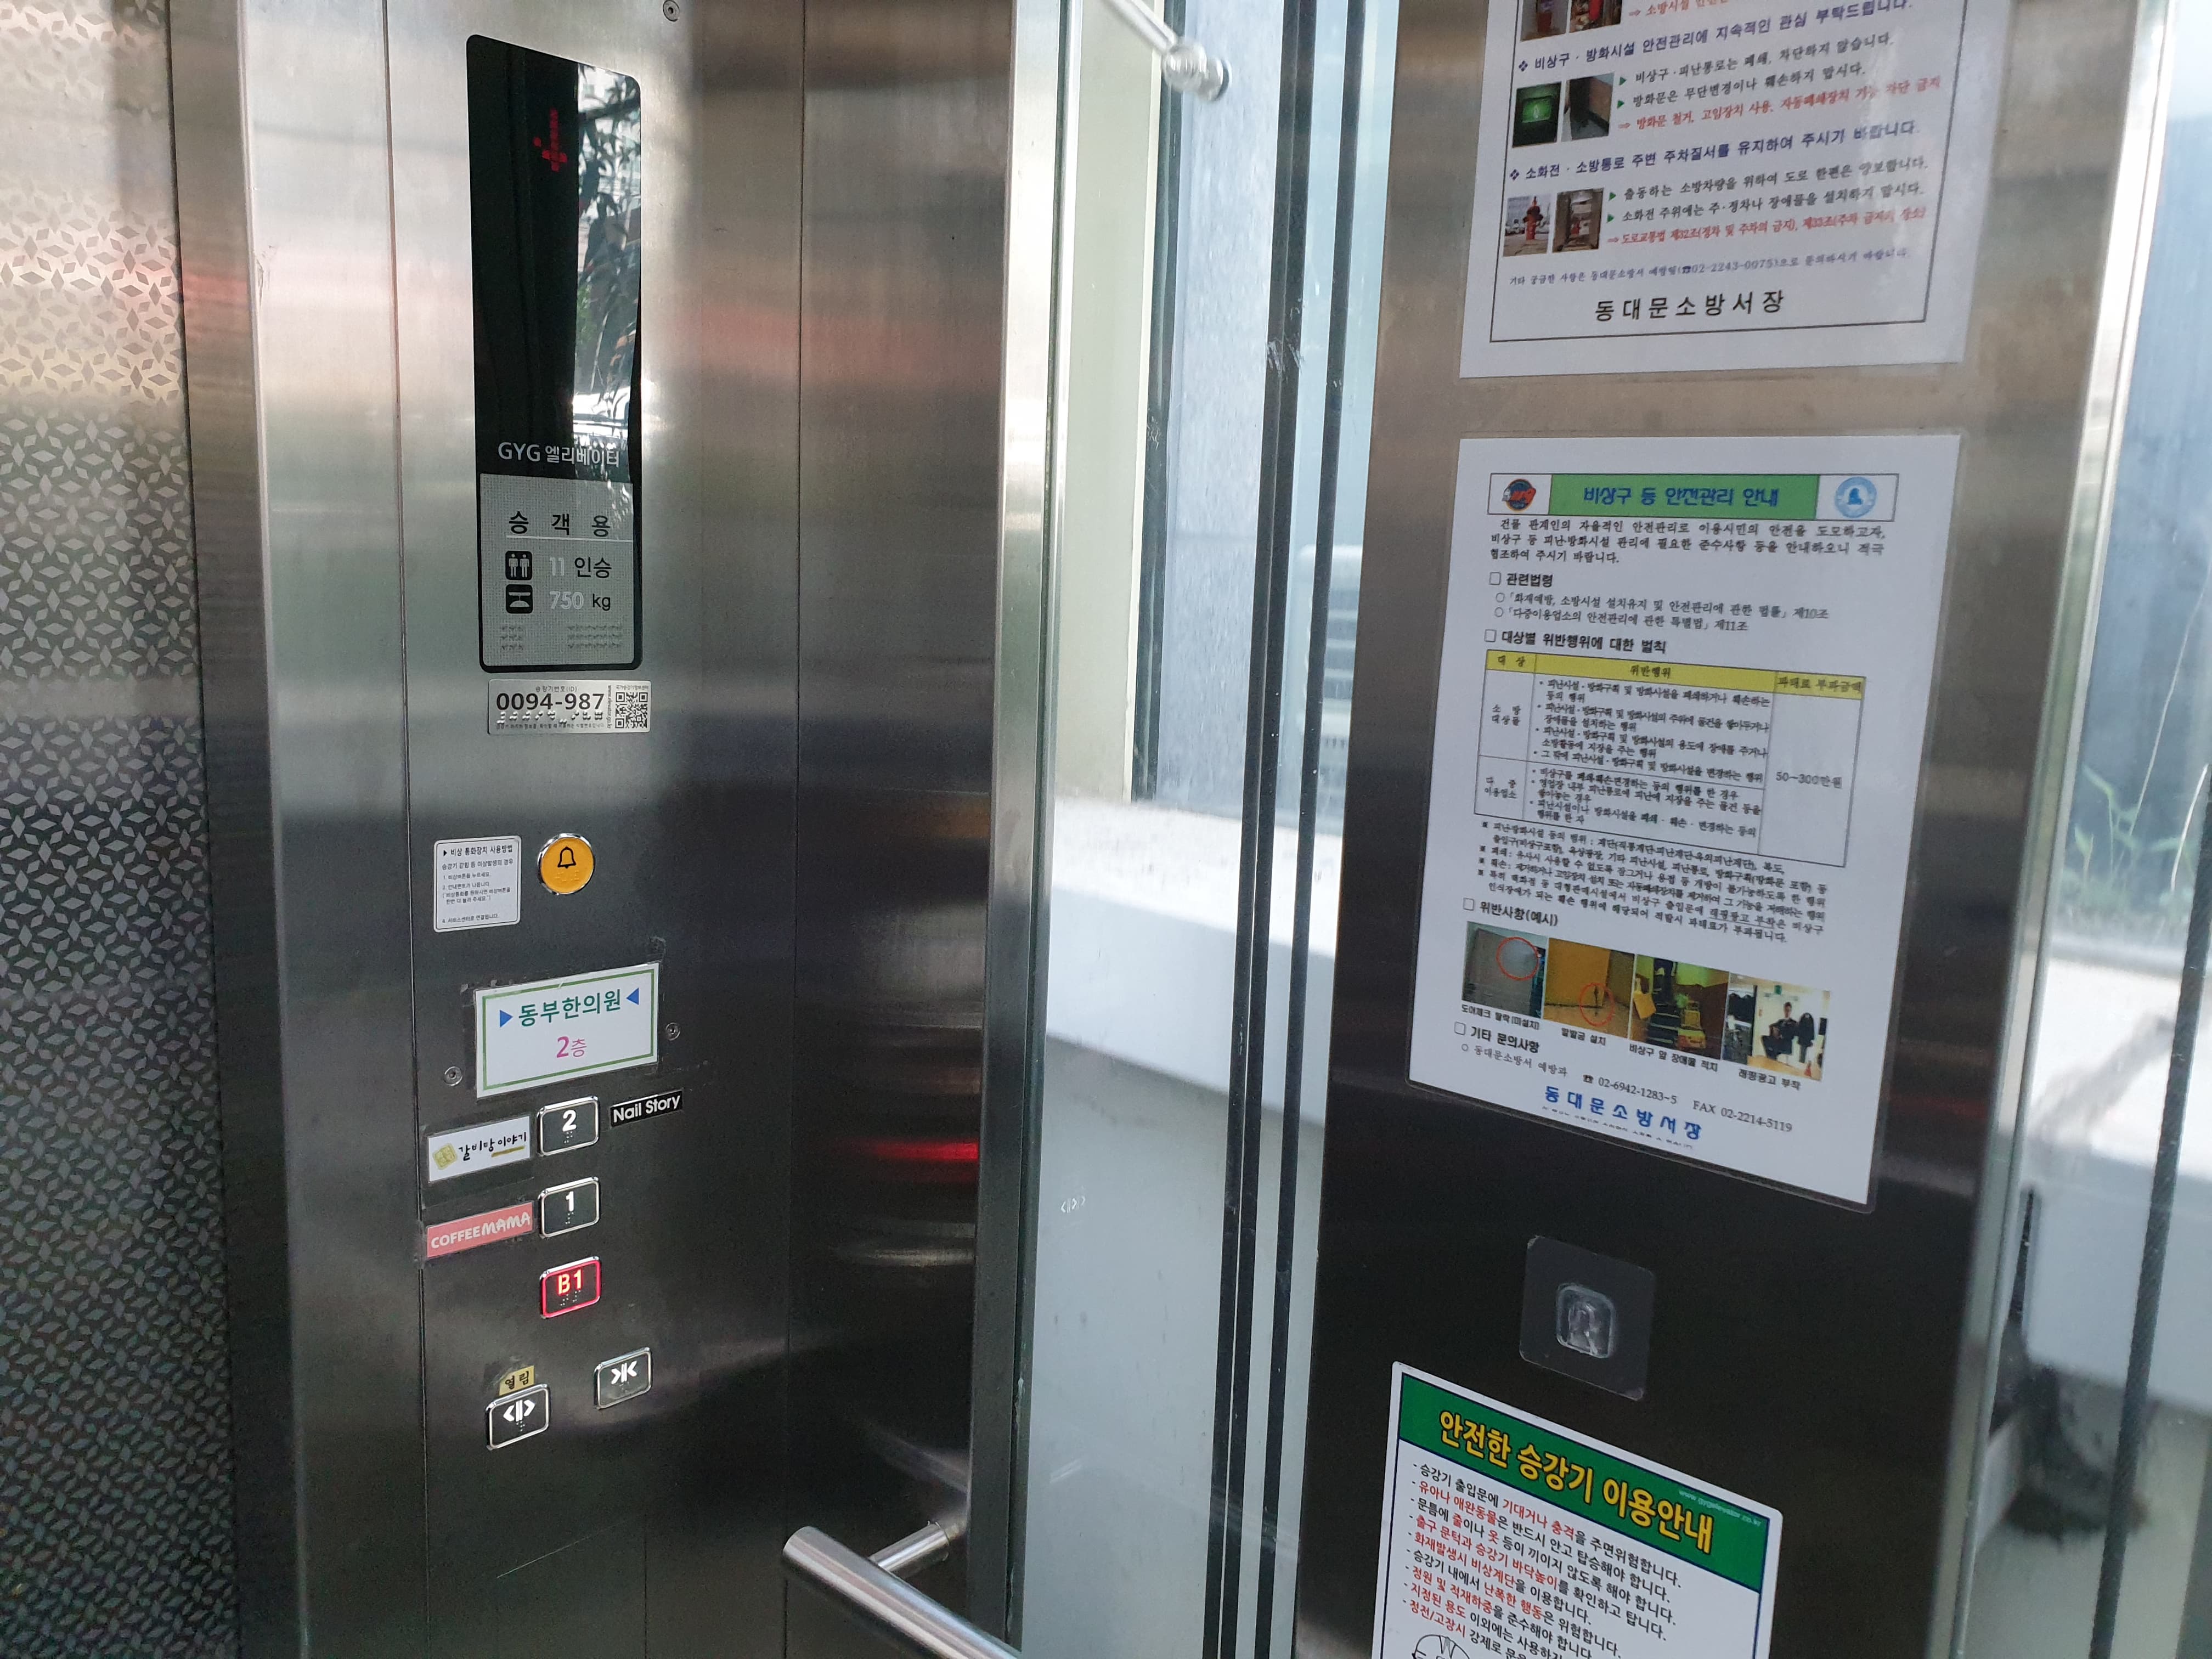 엘리베이터 0 : 시각장애인을 위한 점자 버튼과 비상벨이 설치된 엘리베이터 내부 전경